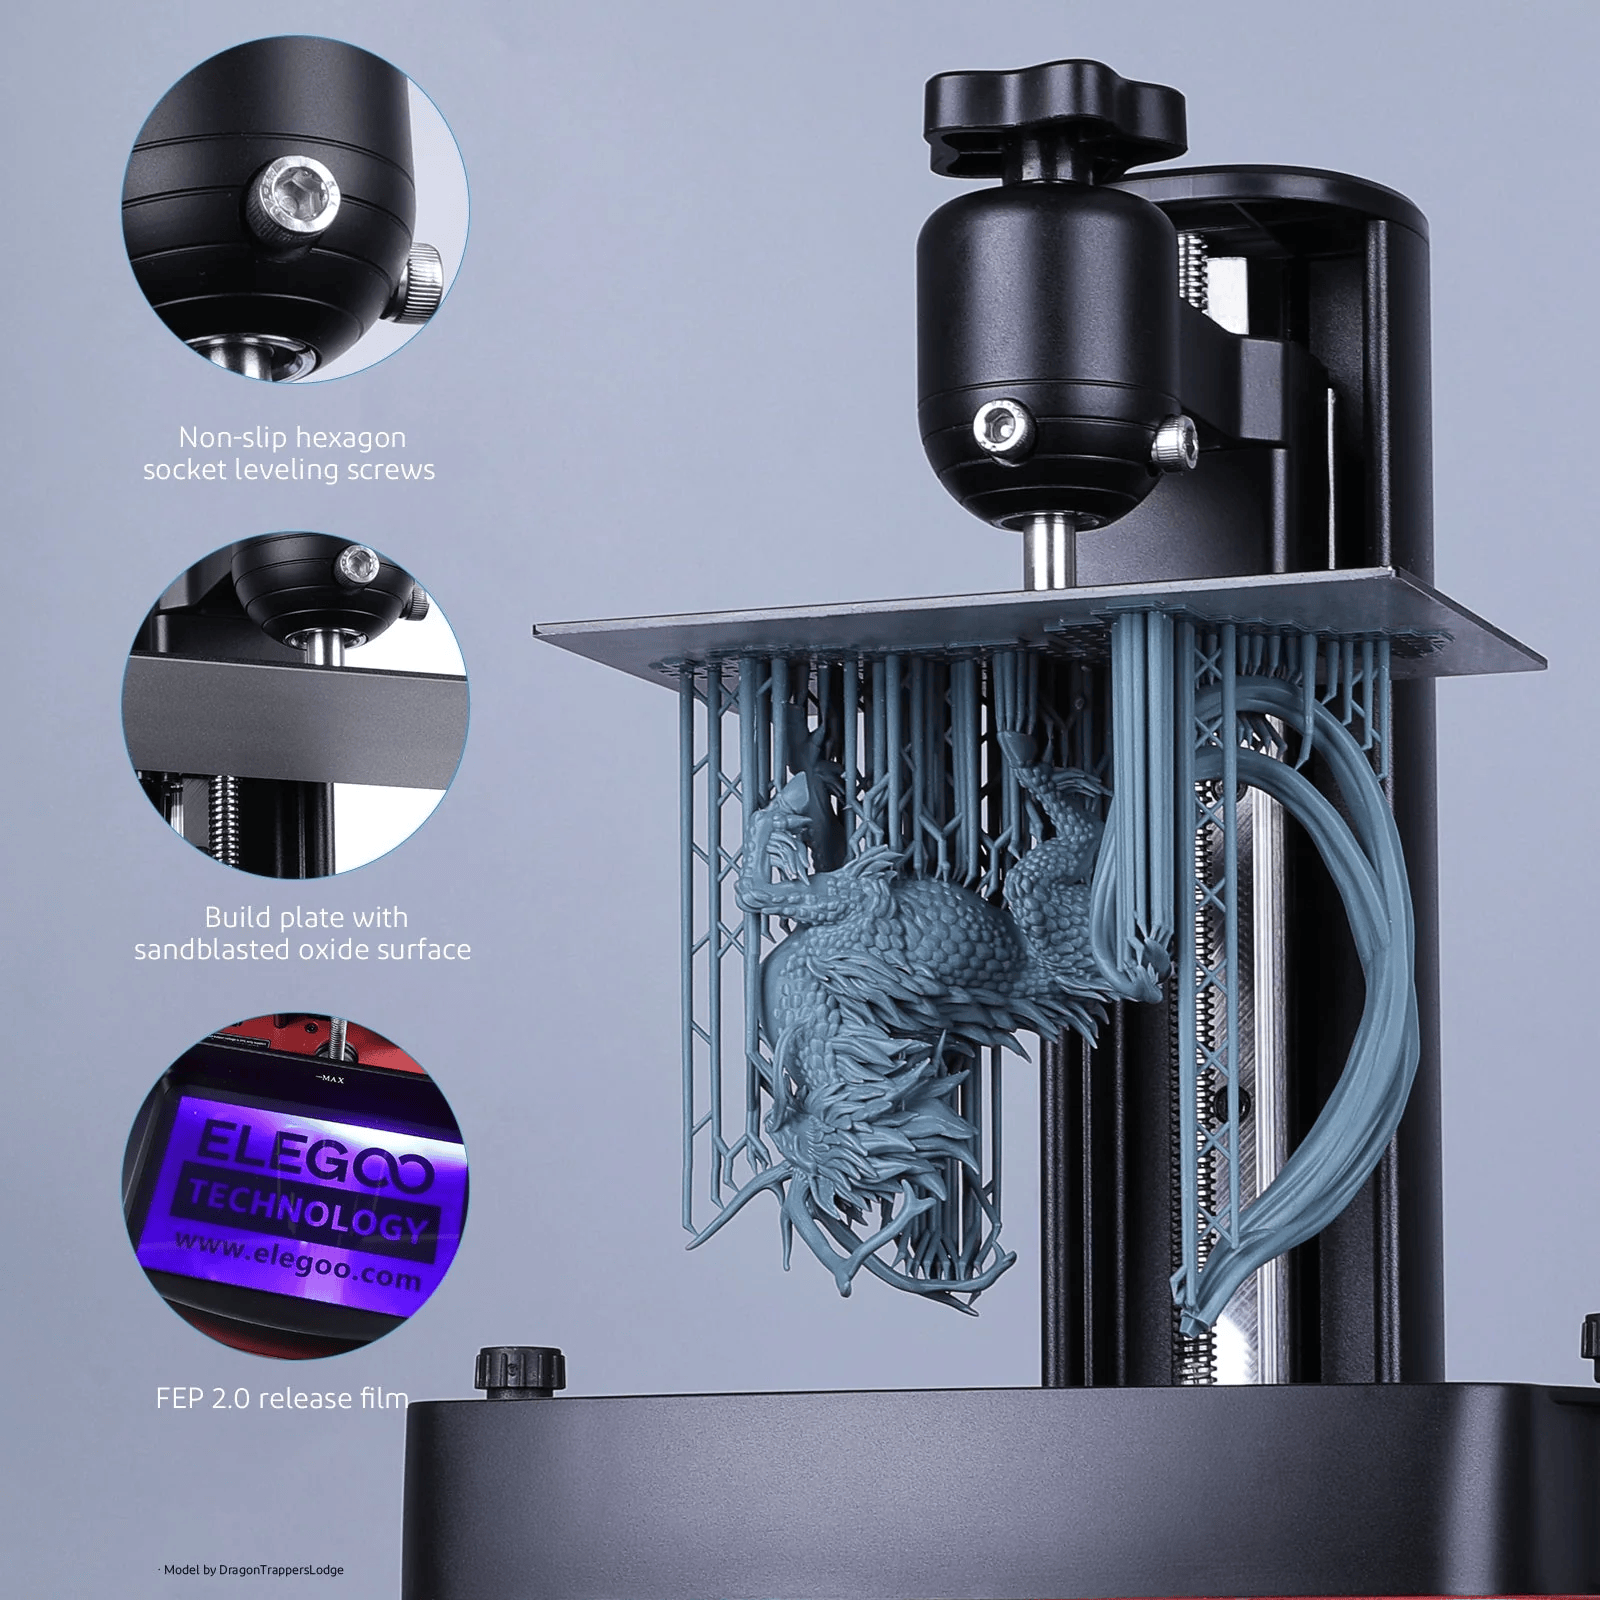 ELEGOO Mars 3 Pro imprimante 3D SLA - Letmeknow